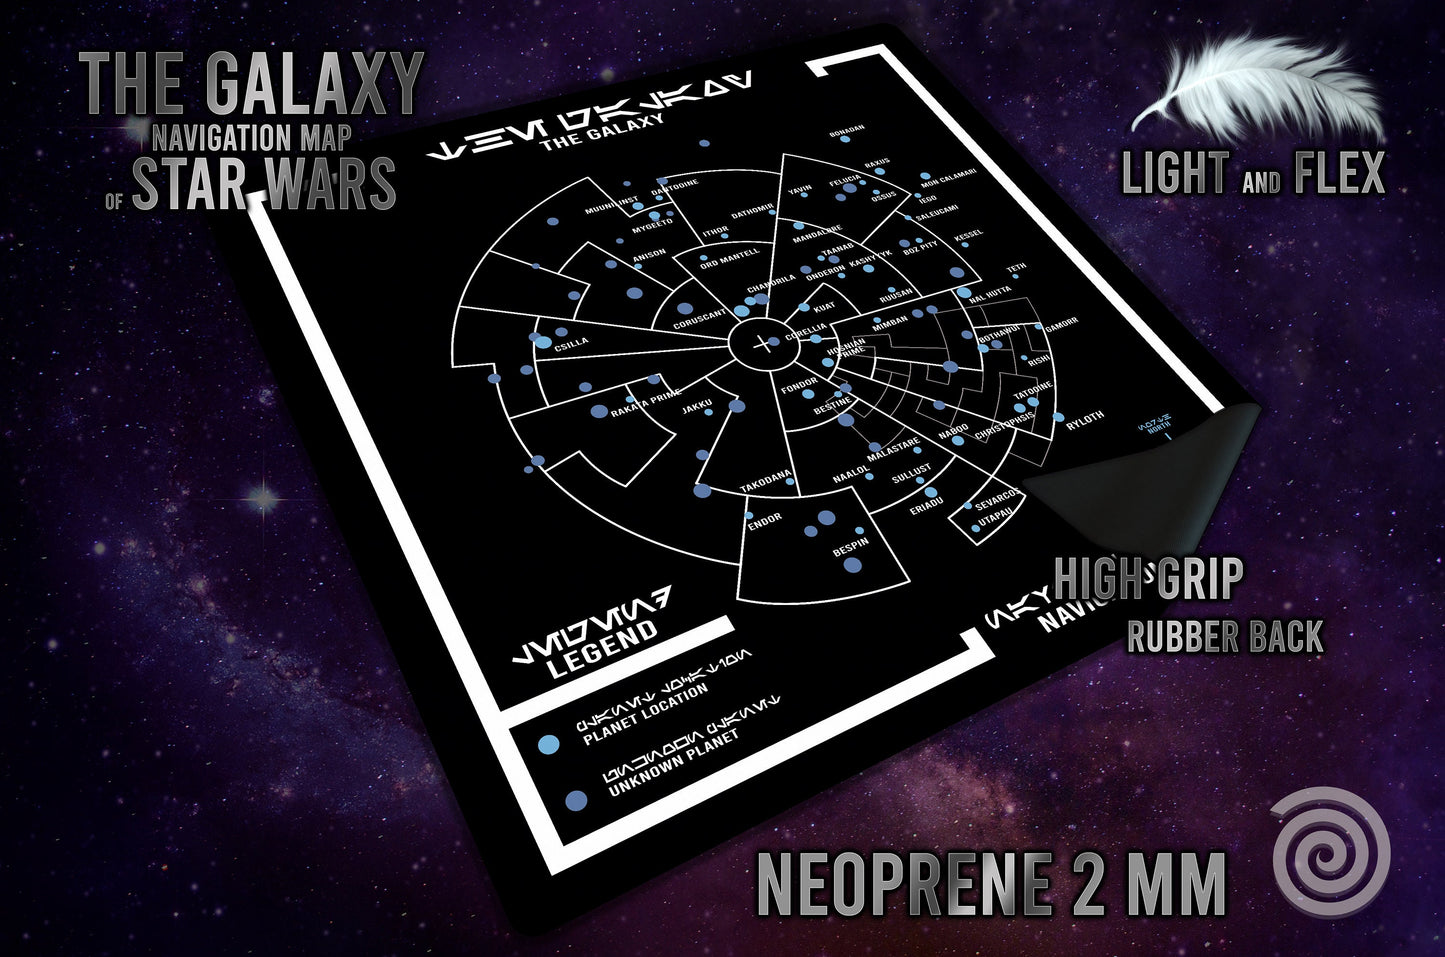 Tapete con el mapa de navegación de la Galaxia ( basado en Star Wars / Era de la Rebellion)